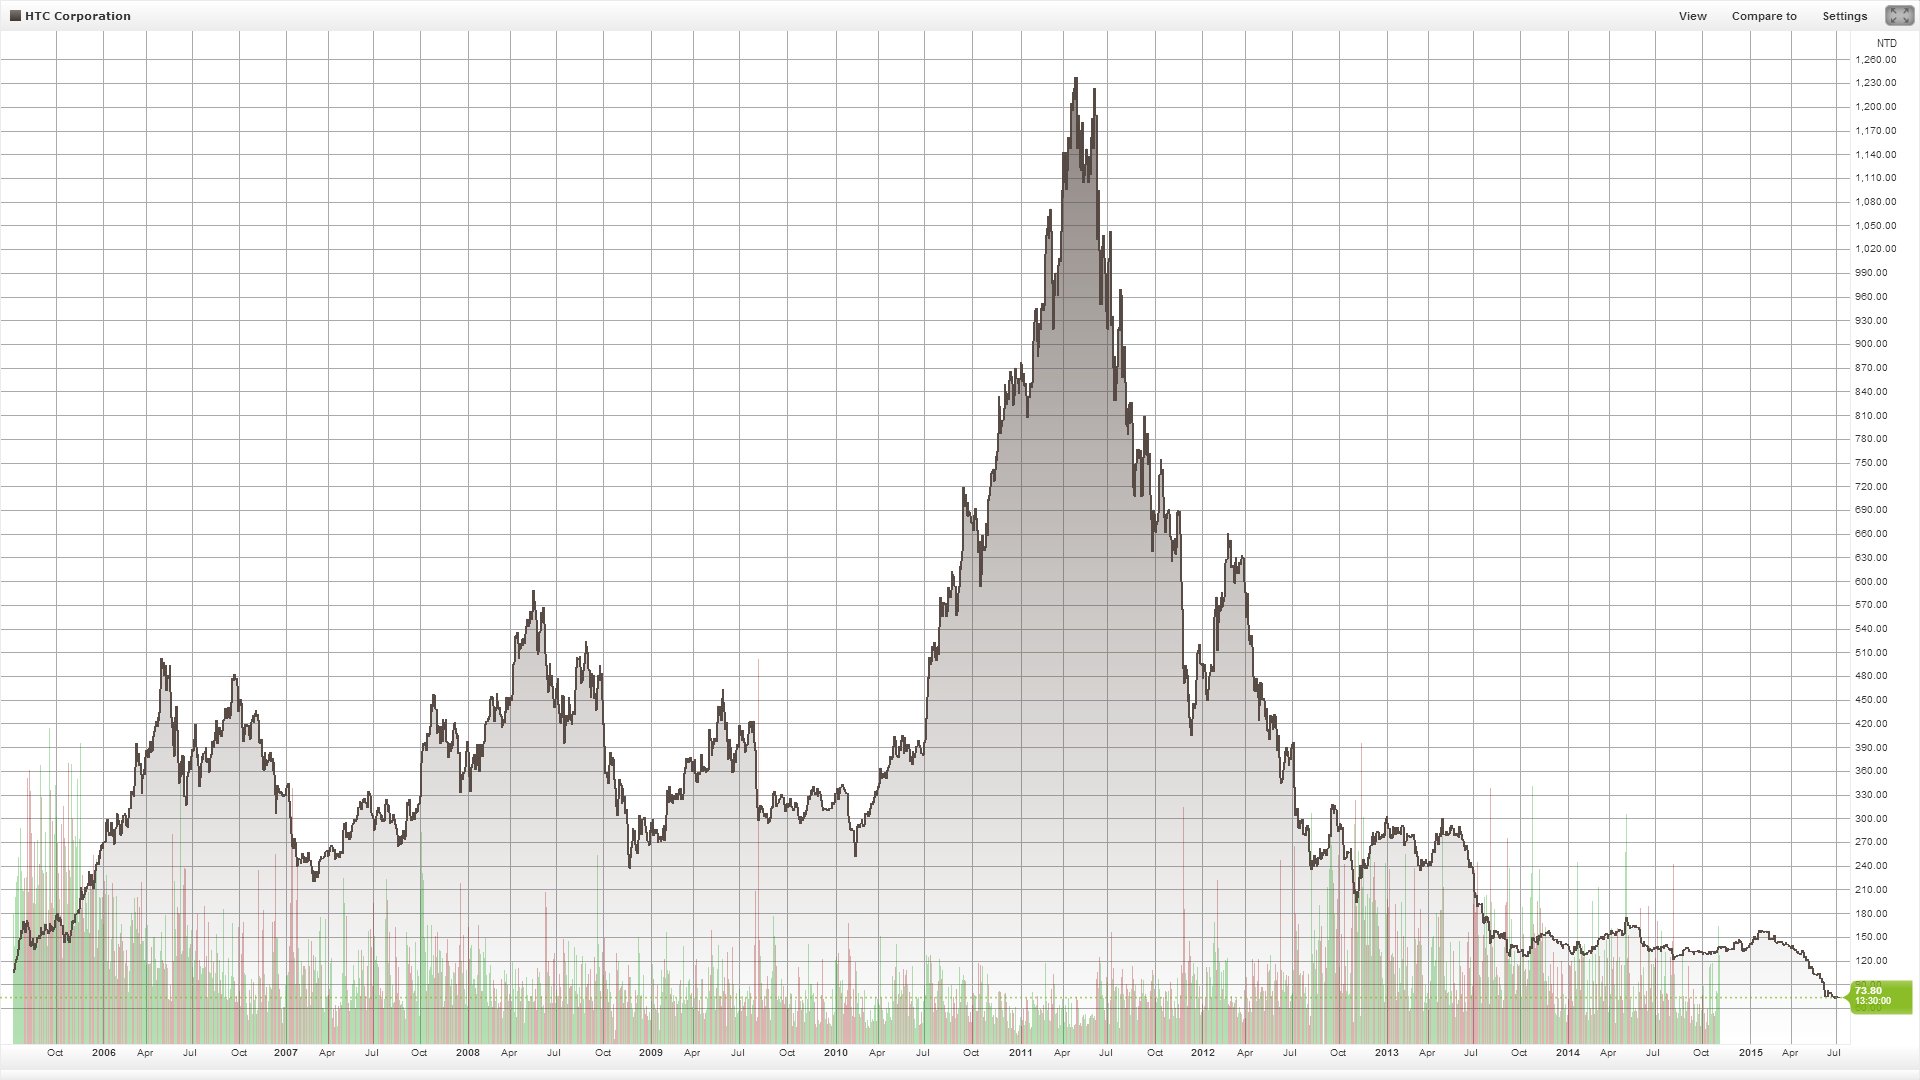 Börsenkurs von HTC seit 2005